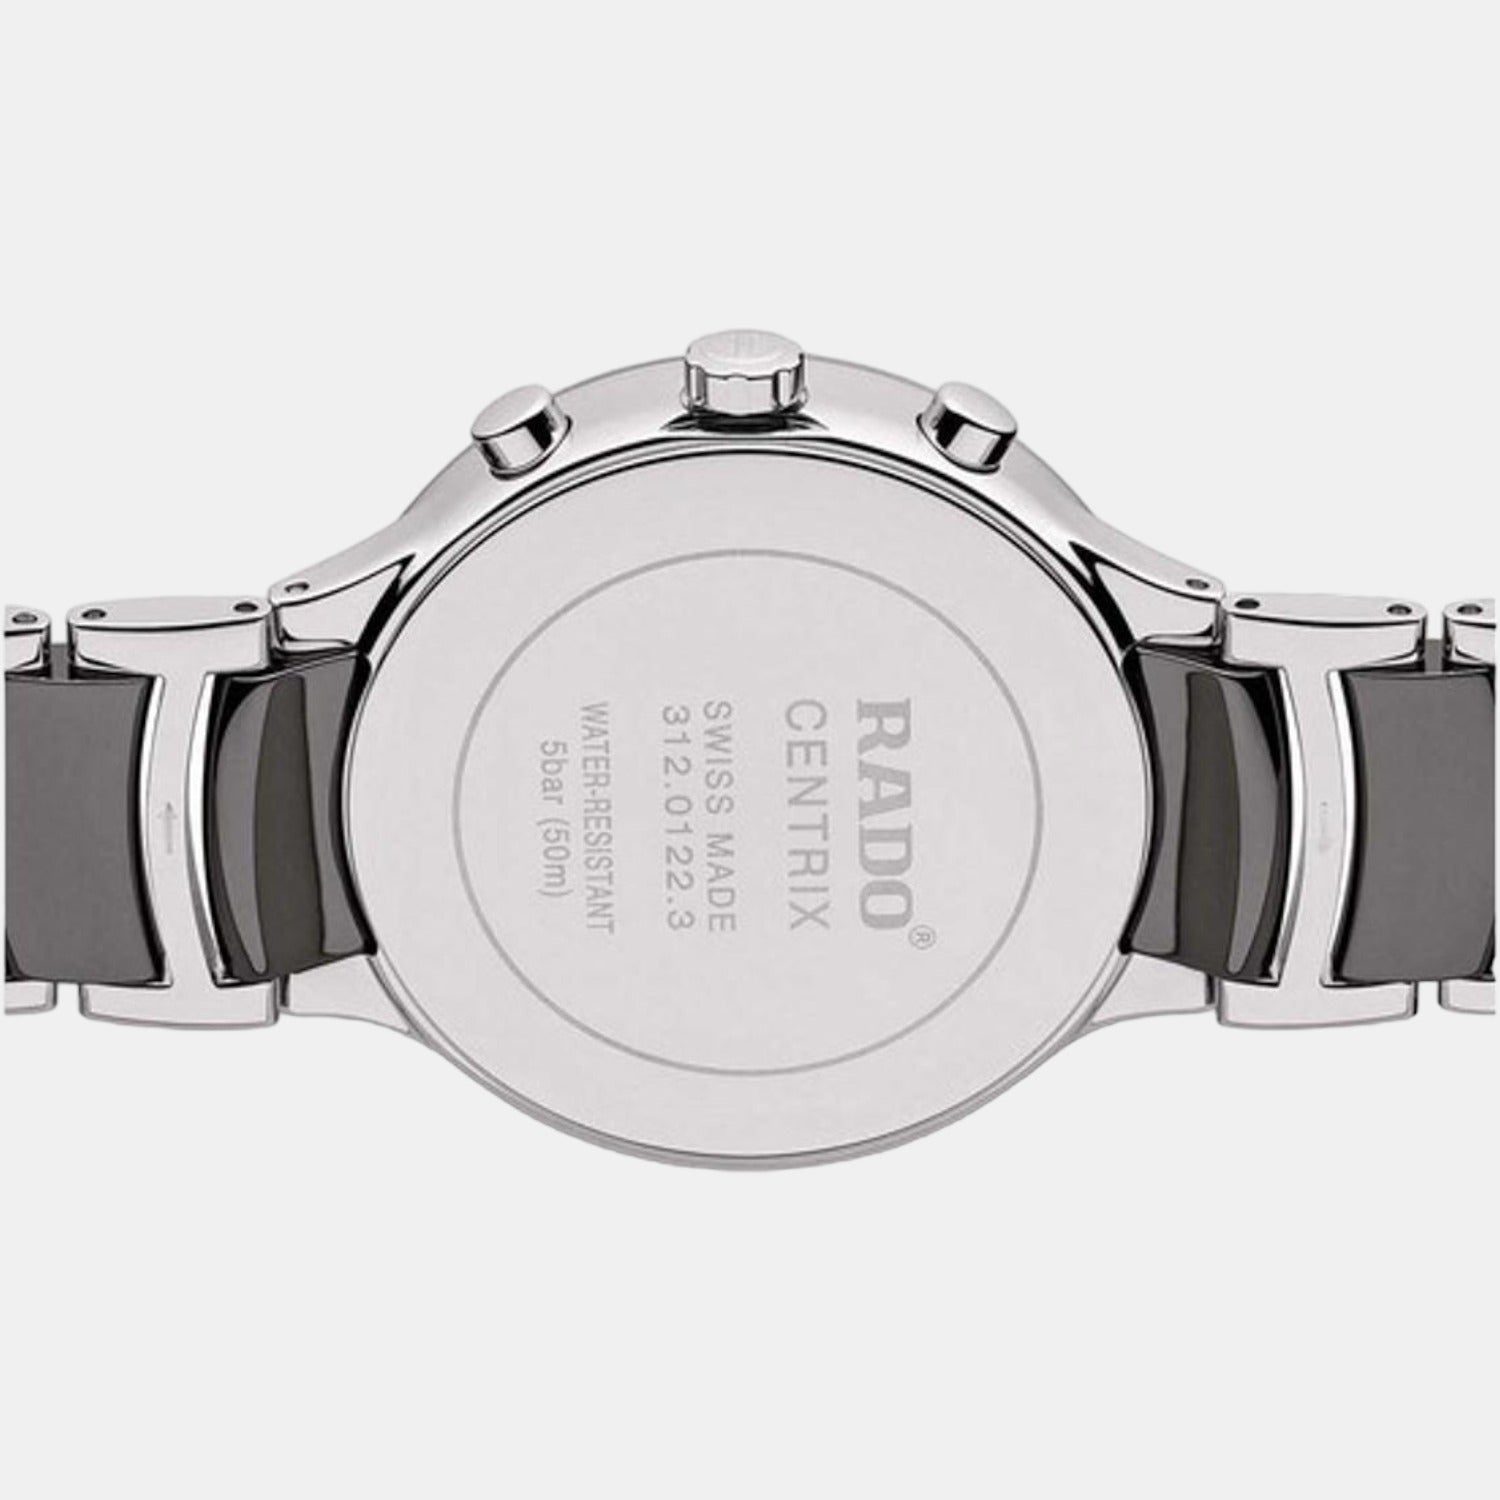 rado-stainless-steel-black-analog-men-watch-r30122122